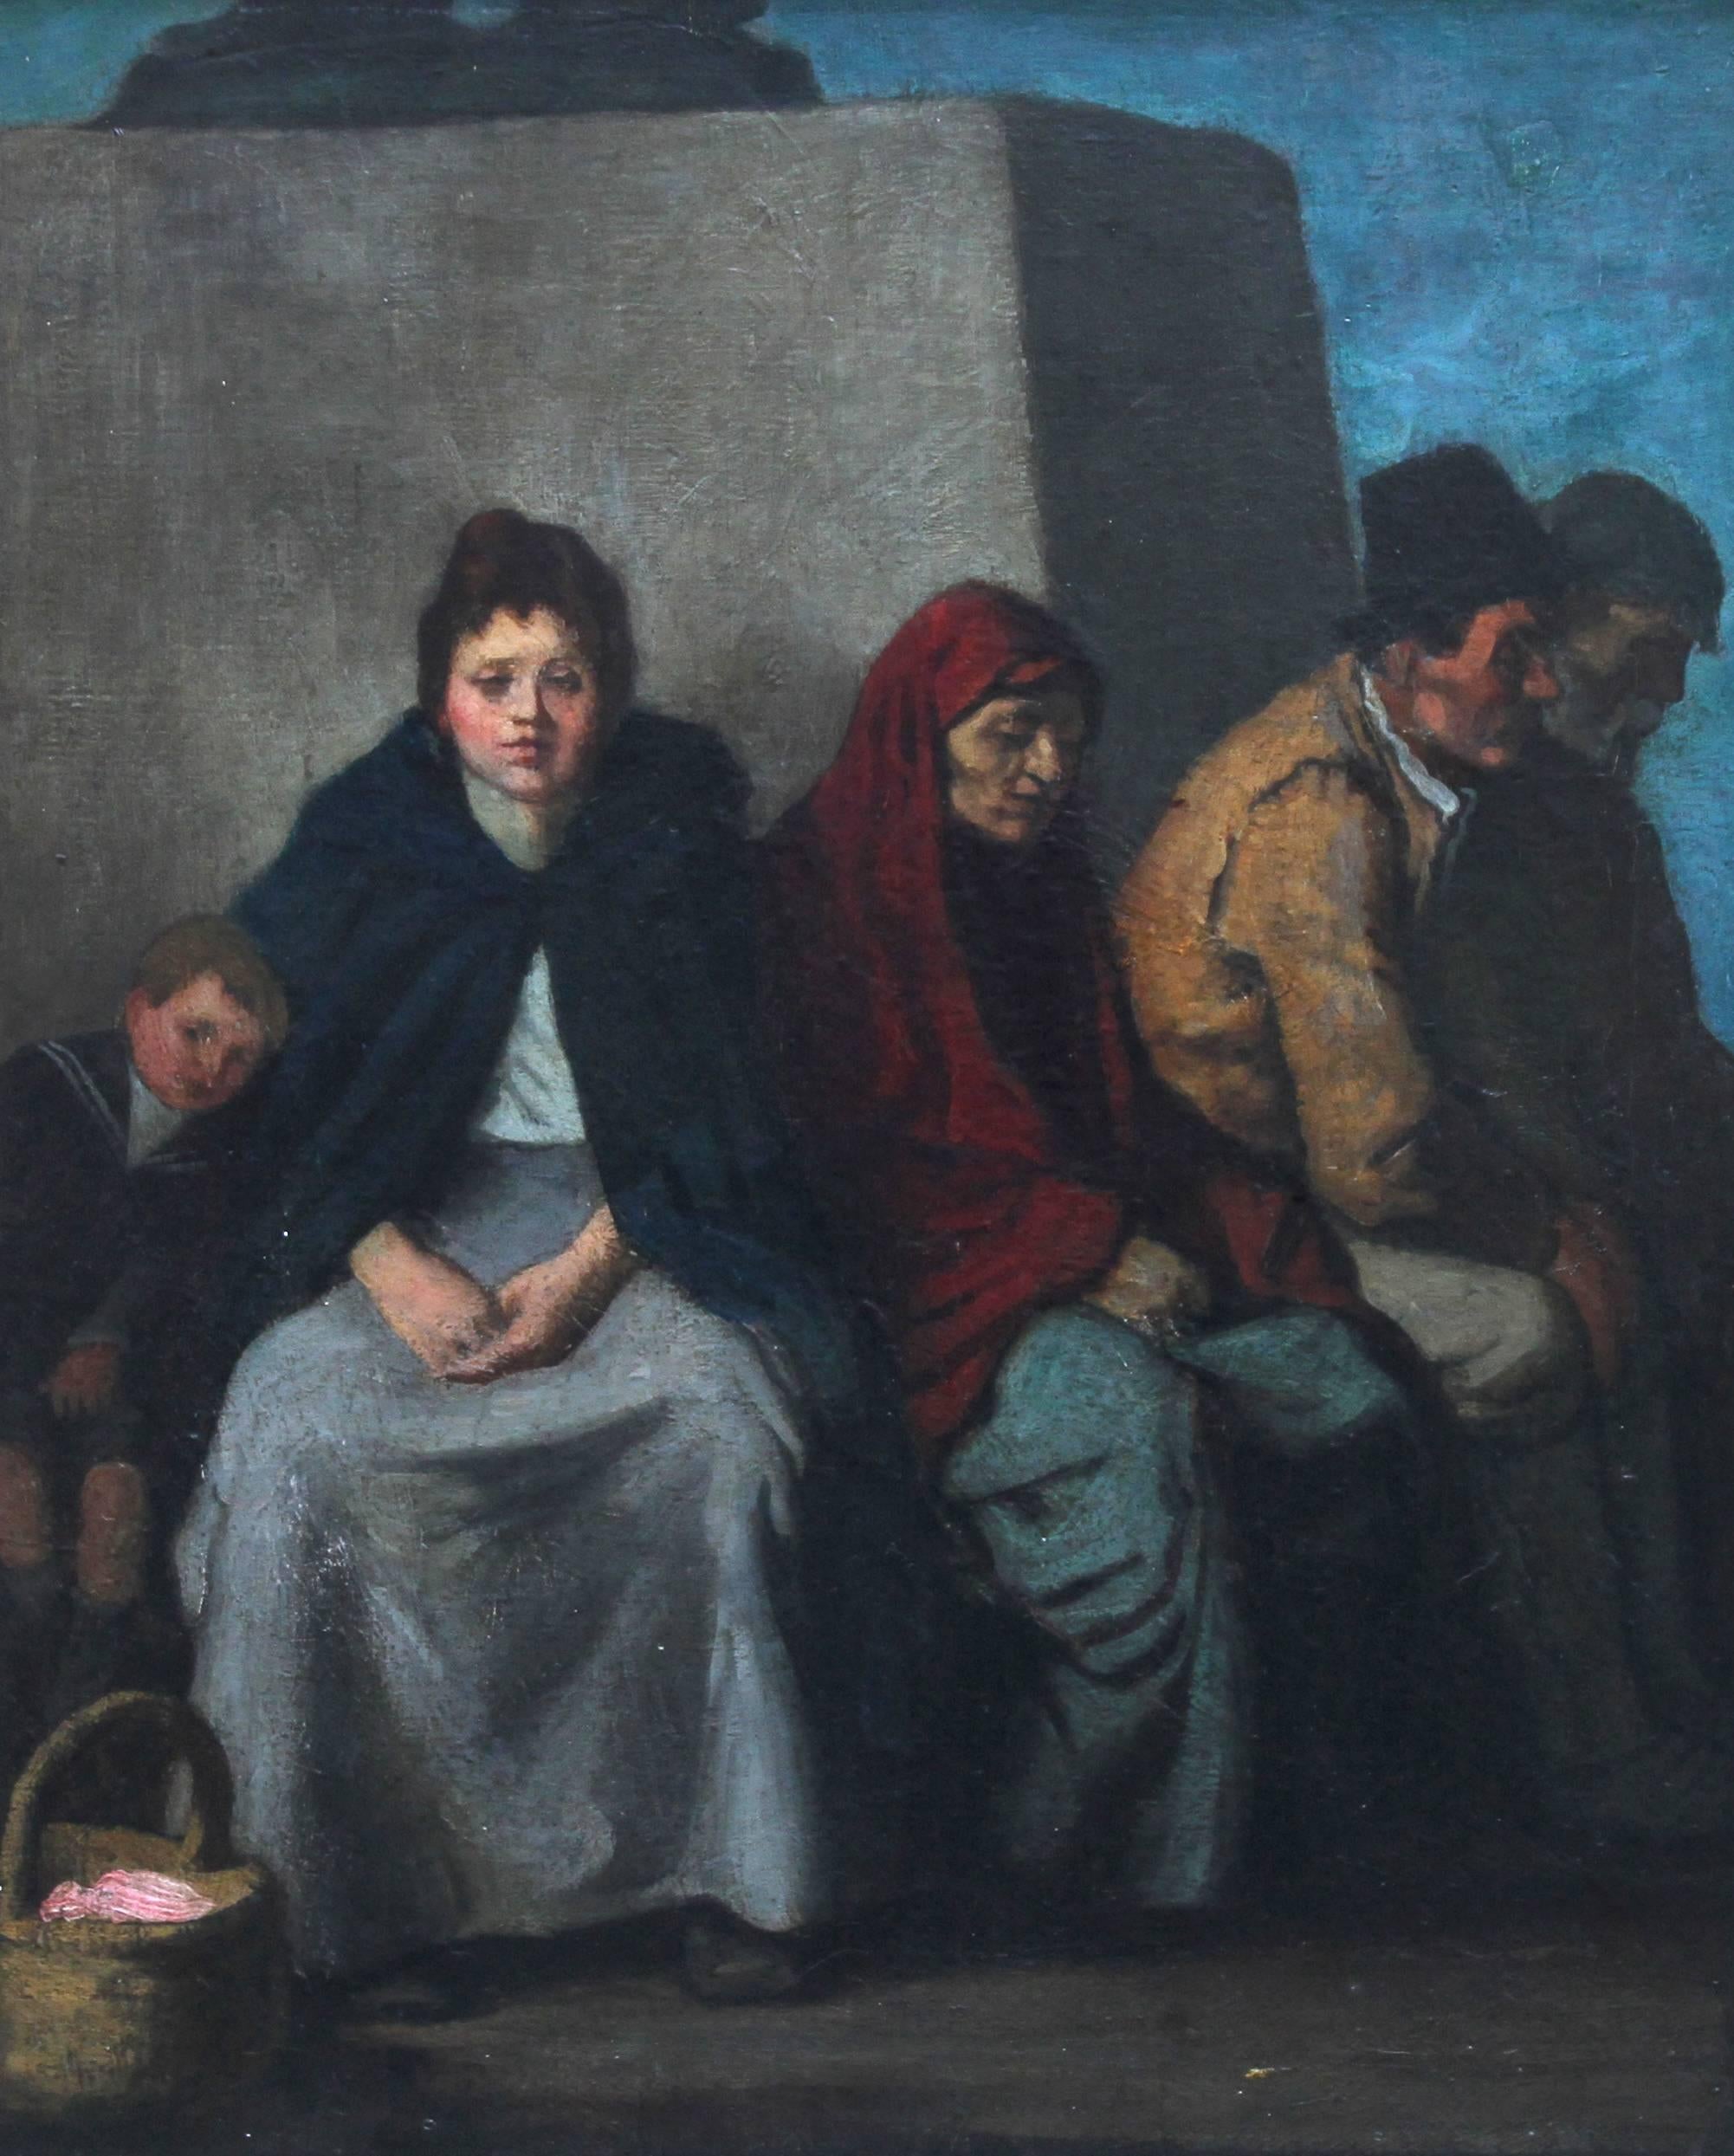 Peinture à l'huile figurative impressionniste écossaise « At the Foot of the Statue »  - Painting de William Strang, R.A., R.E.